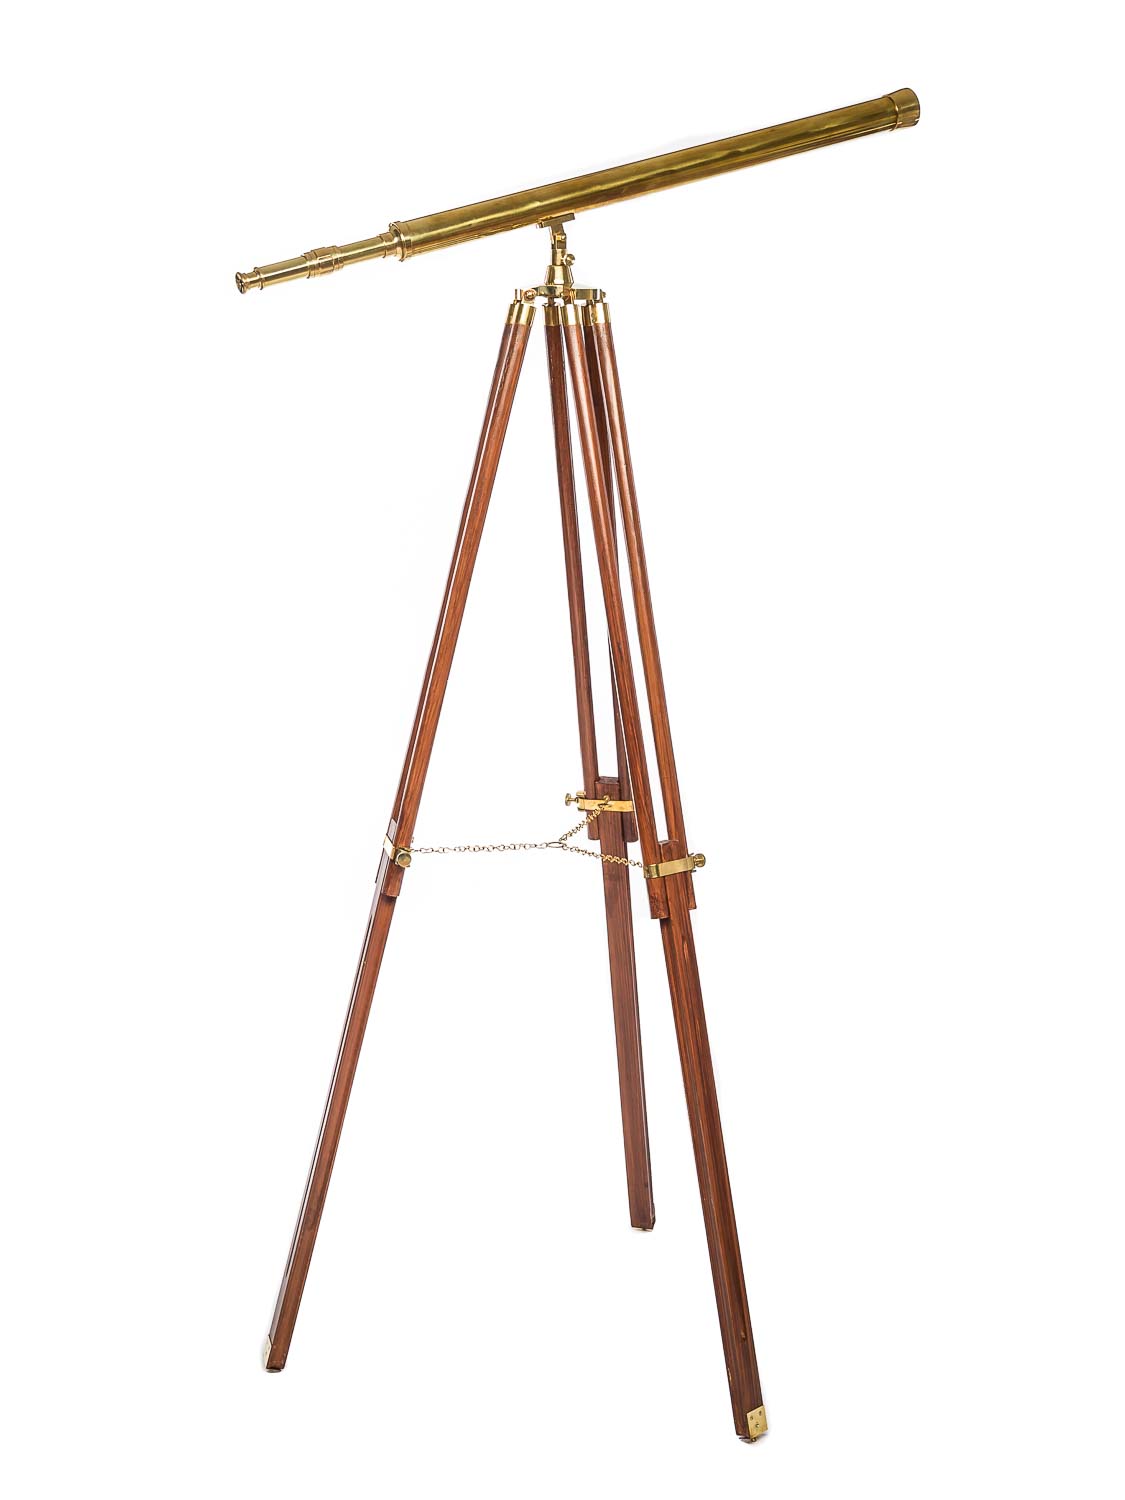 Teleskop Fernrohr Fernglas in Box … Messing mit Leder … 32cm lang … Antik Replik 